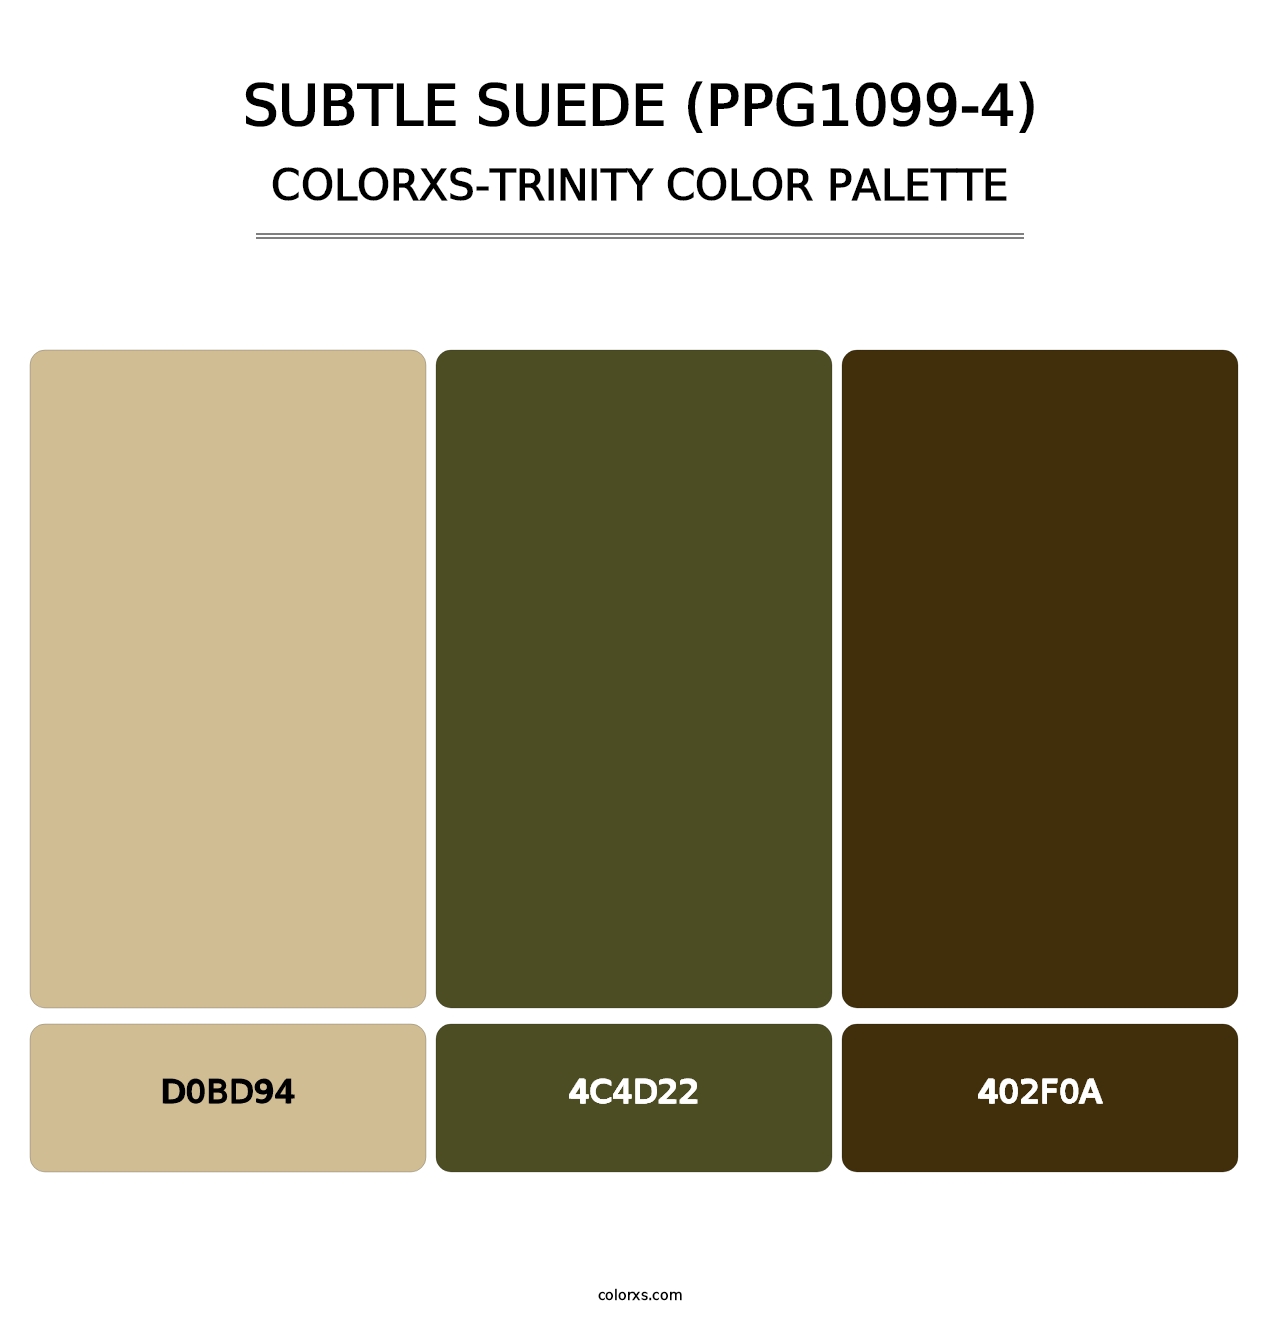 Subtle Suede (PPG1099-4) - Colorxs Trinity Palette